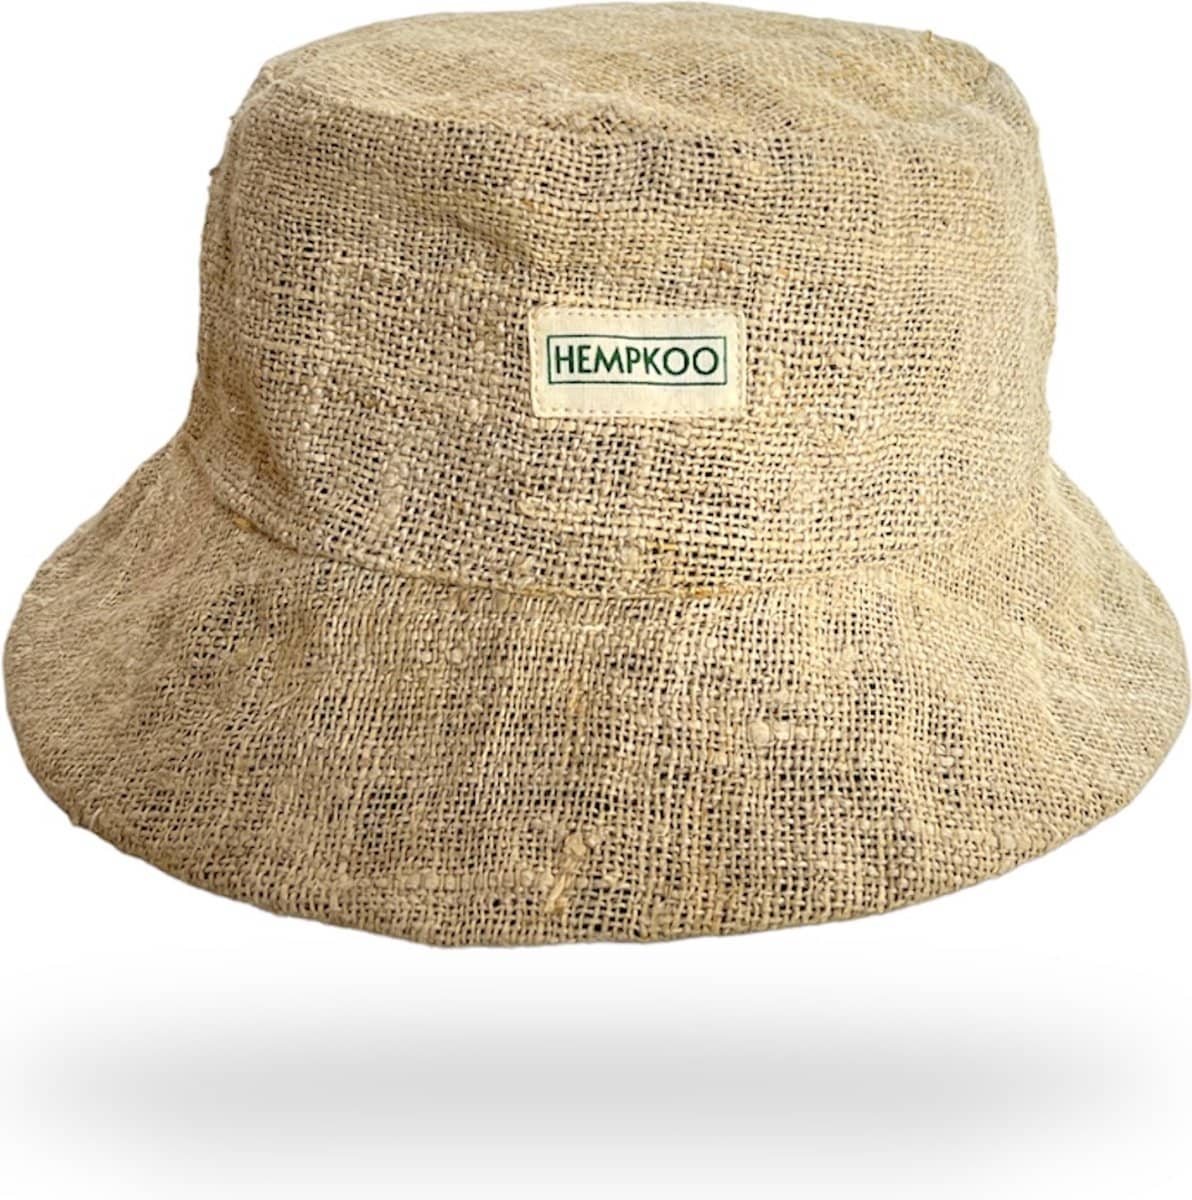 HEMPKOO Bucket Hat – Duurzaam Hennep Vissershoedje. Gemaakt van hennep